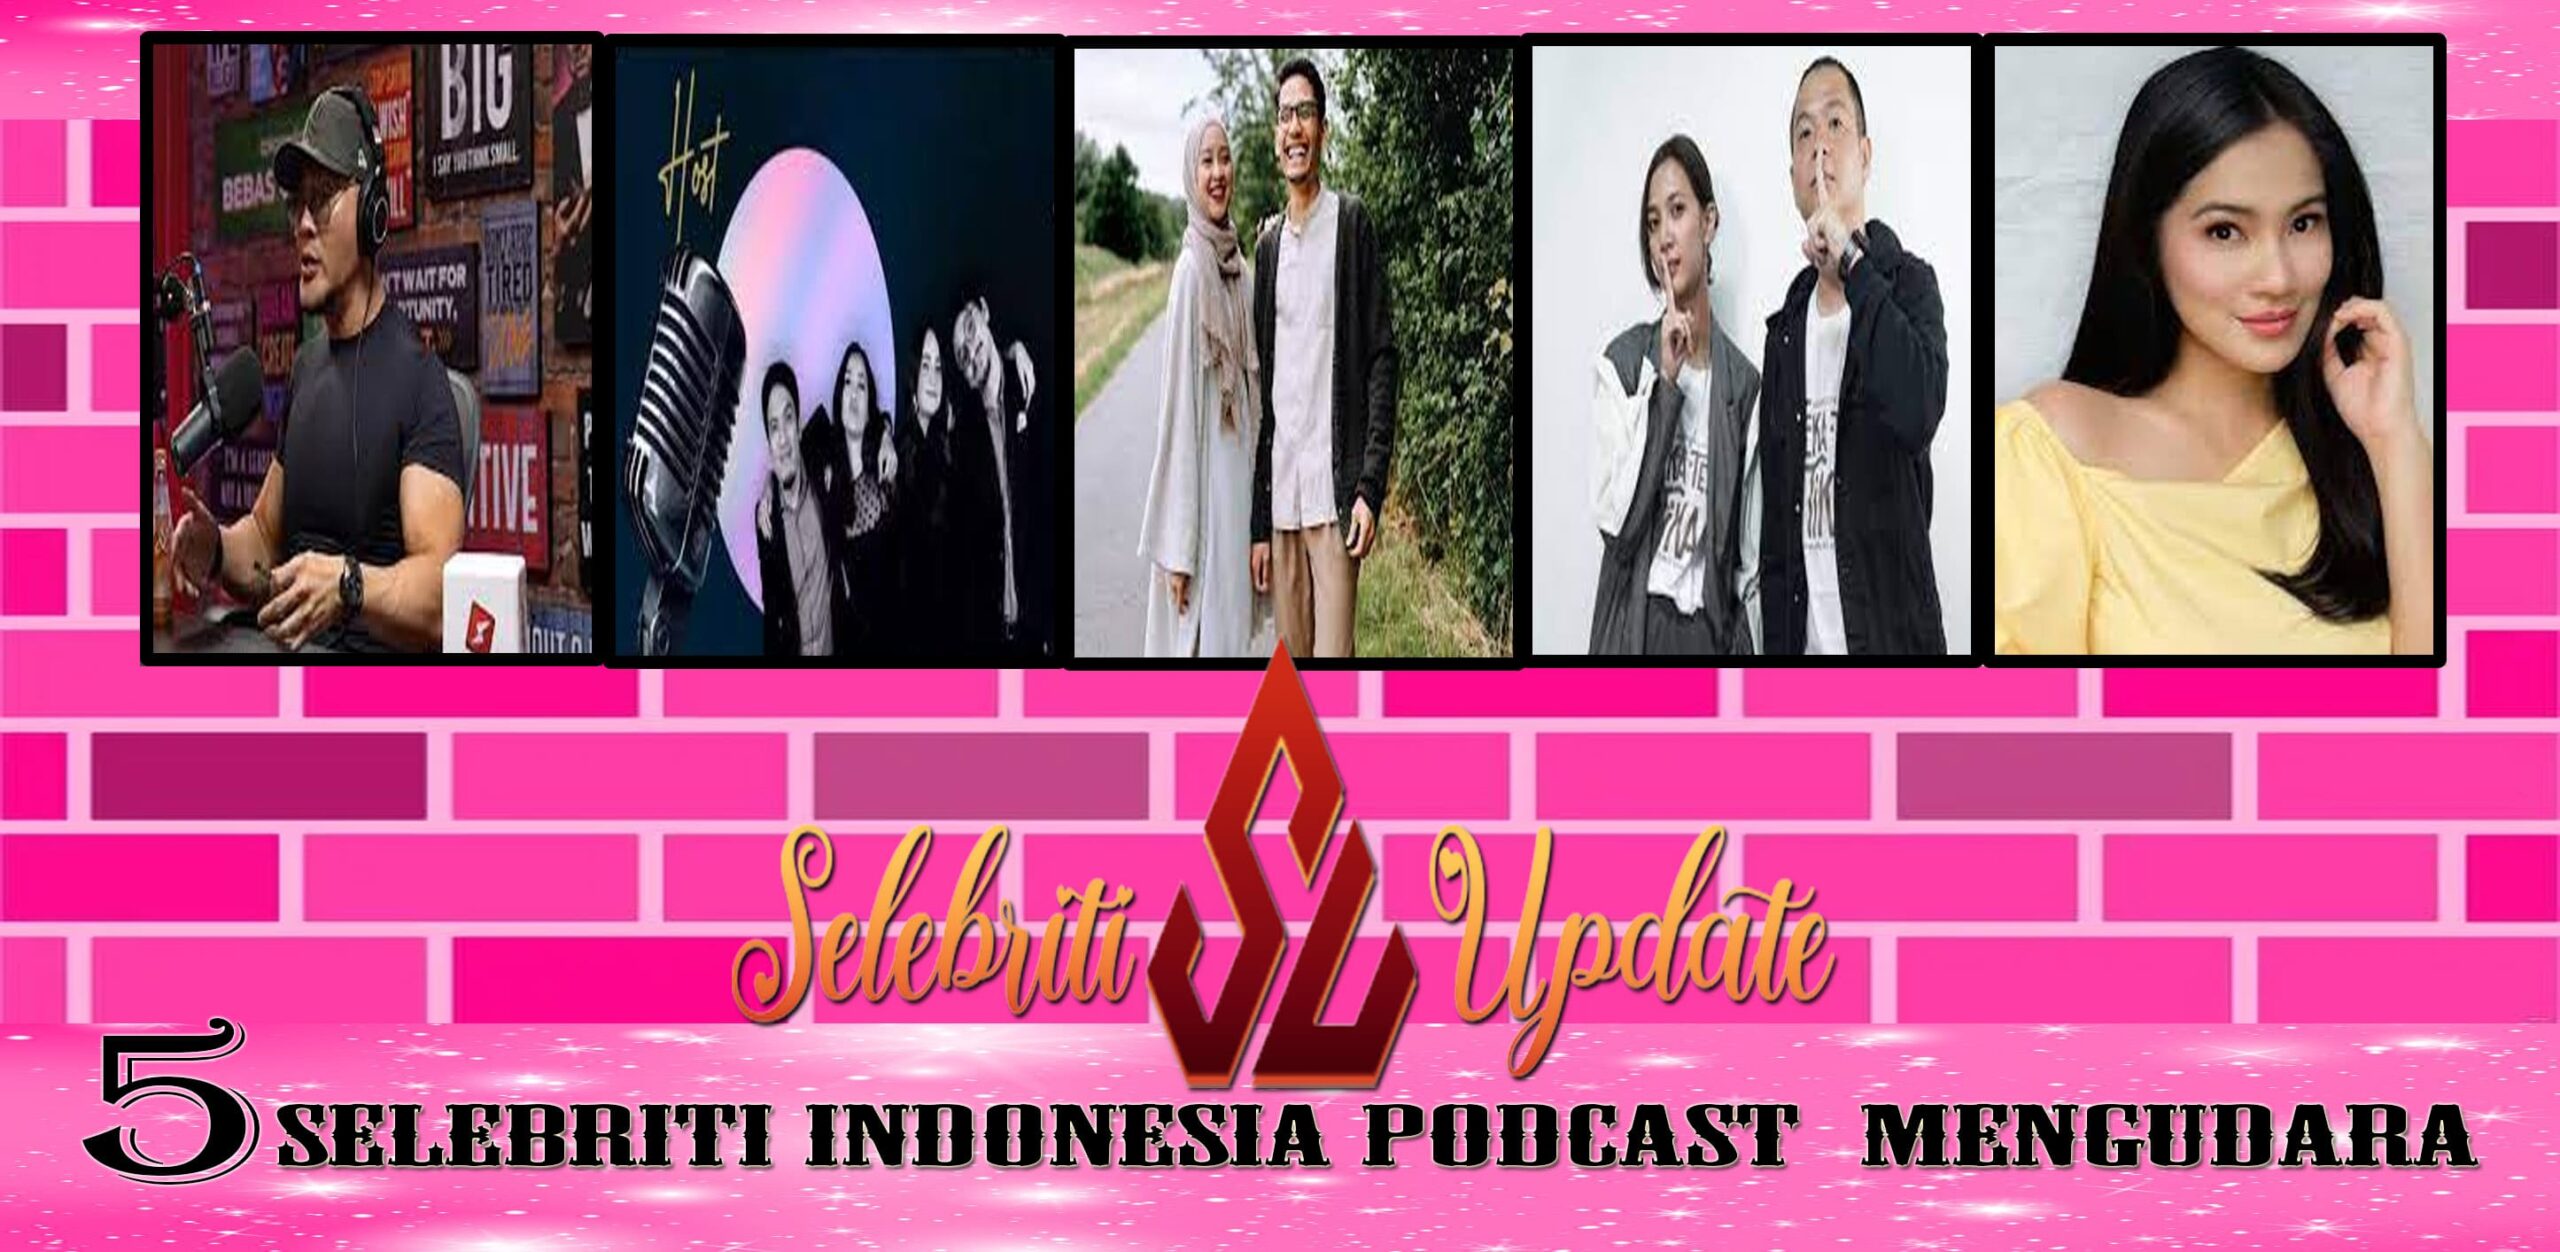 5 Selebriti Indonesia Podcast